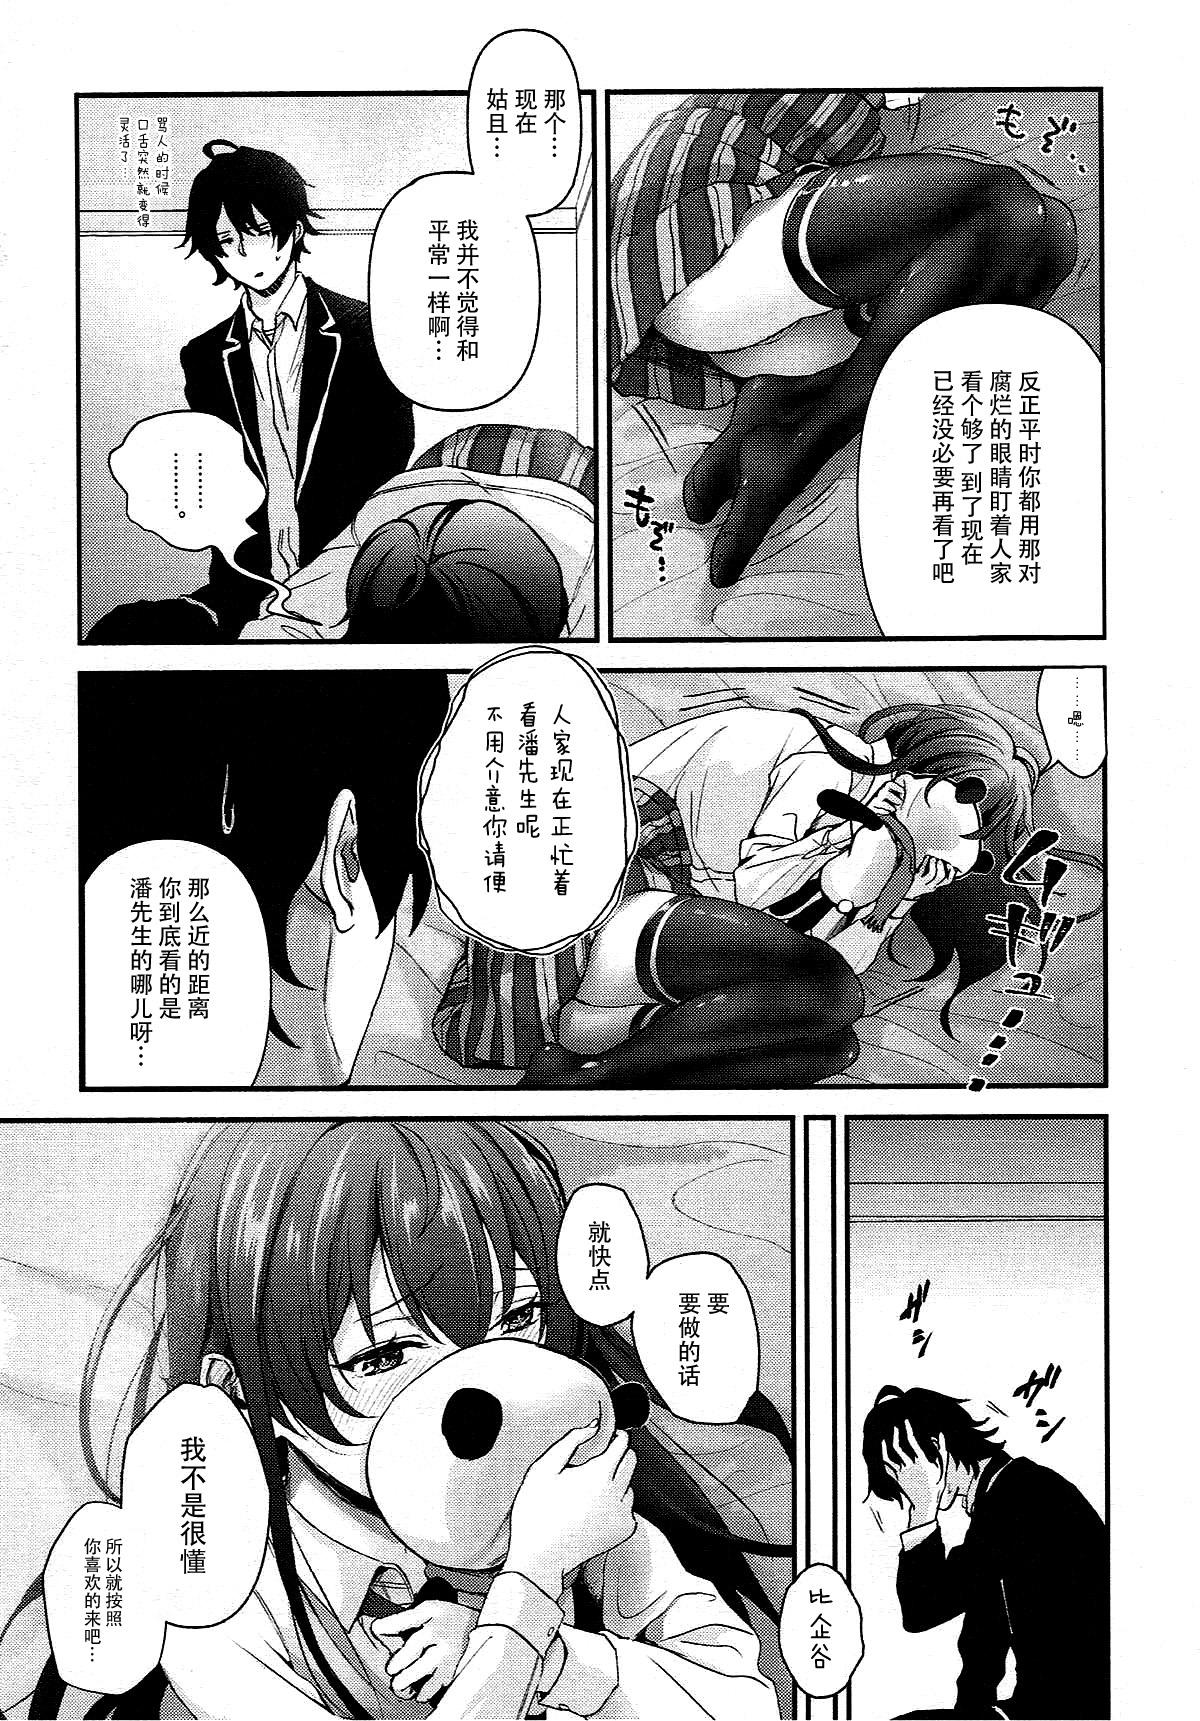 Culona Yukinohi. - Yahari ore no seishun love come wa machigatteiru Esposa - Page 4